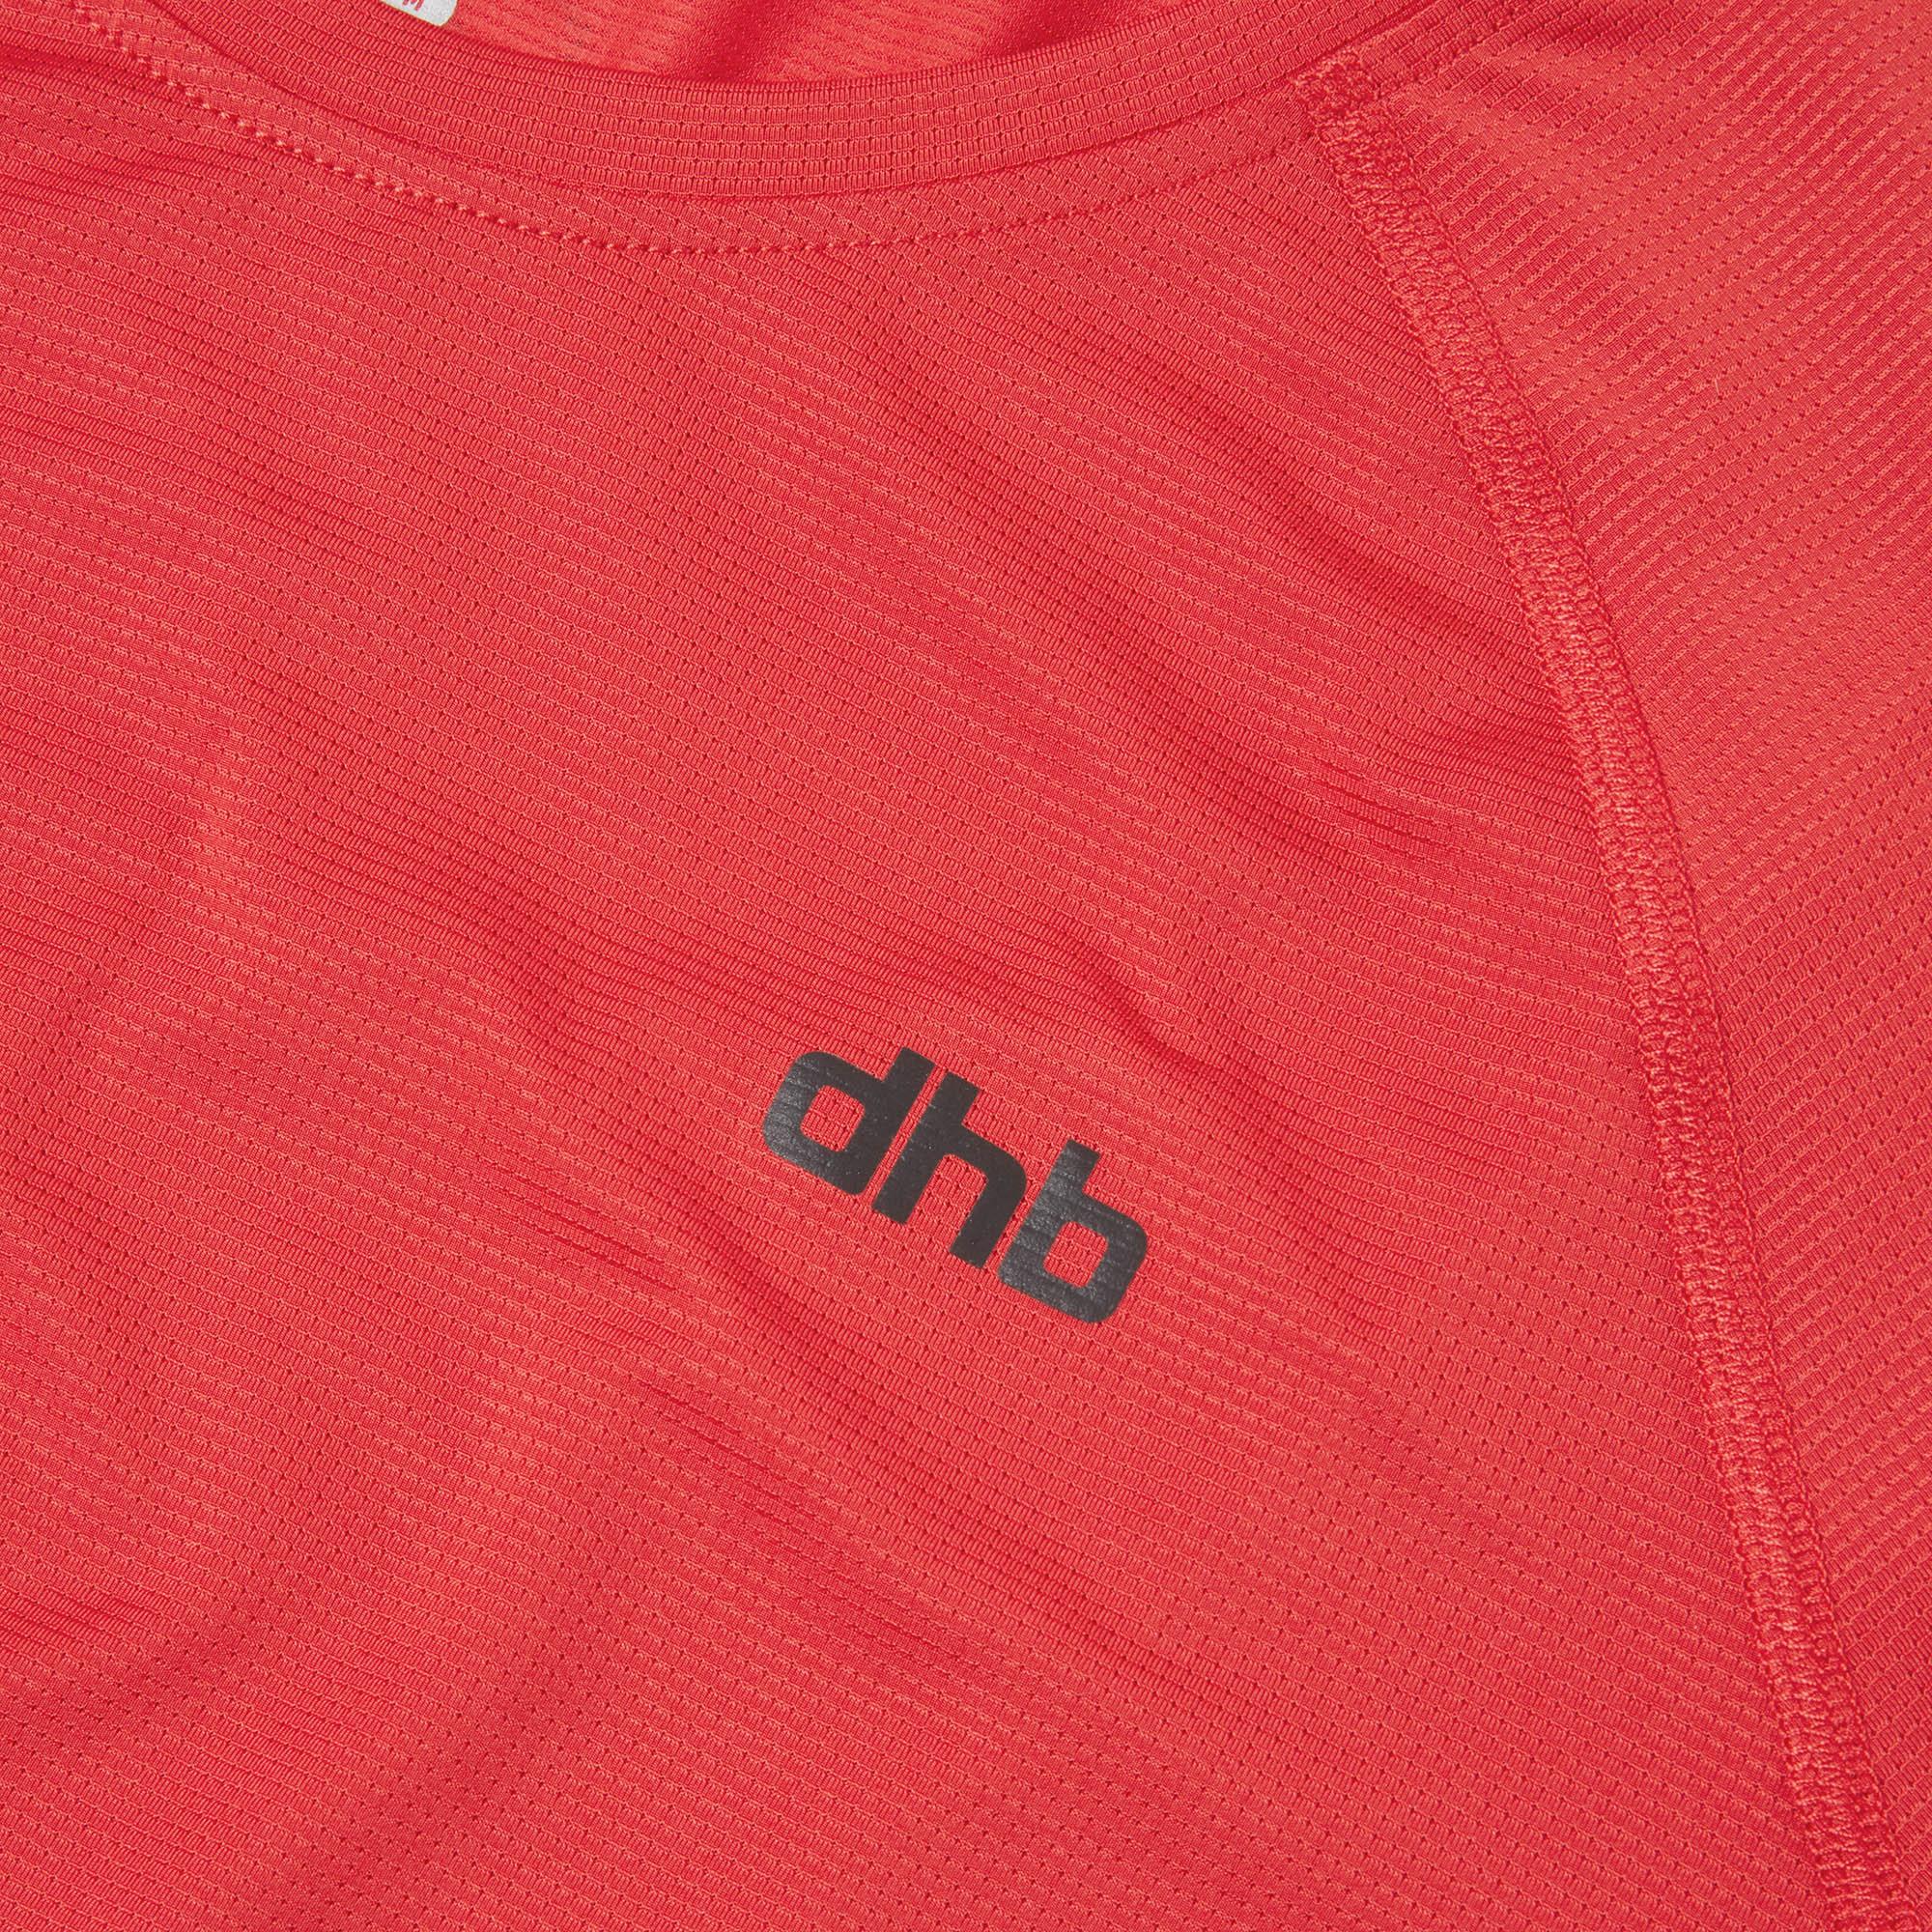 Dhb Aeron Mens Long Sleeve Run Top 2.0 - Haute Red